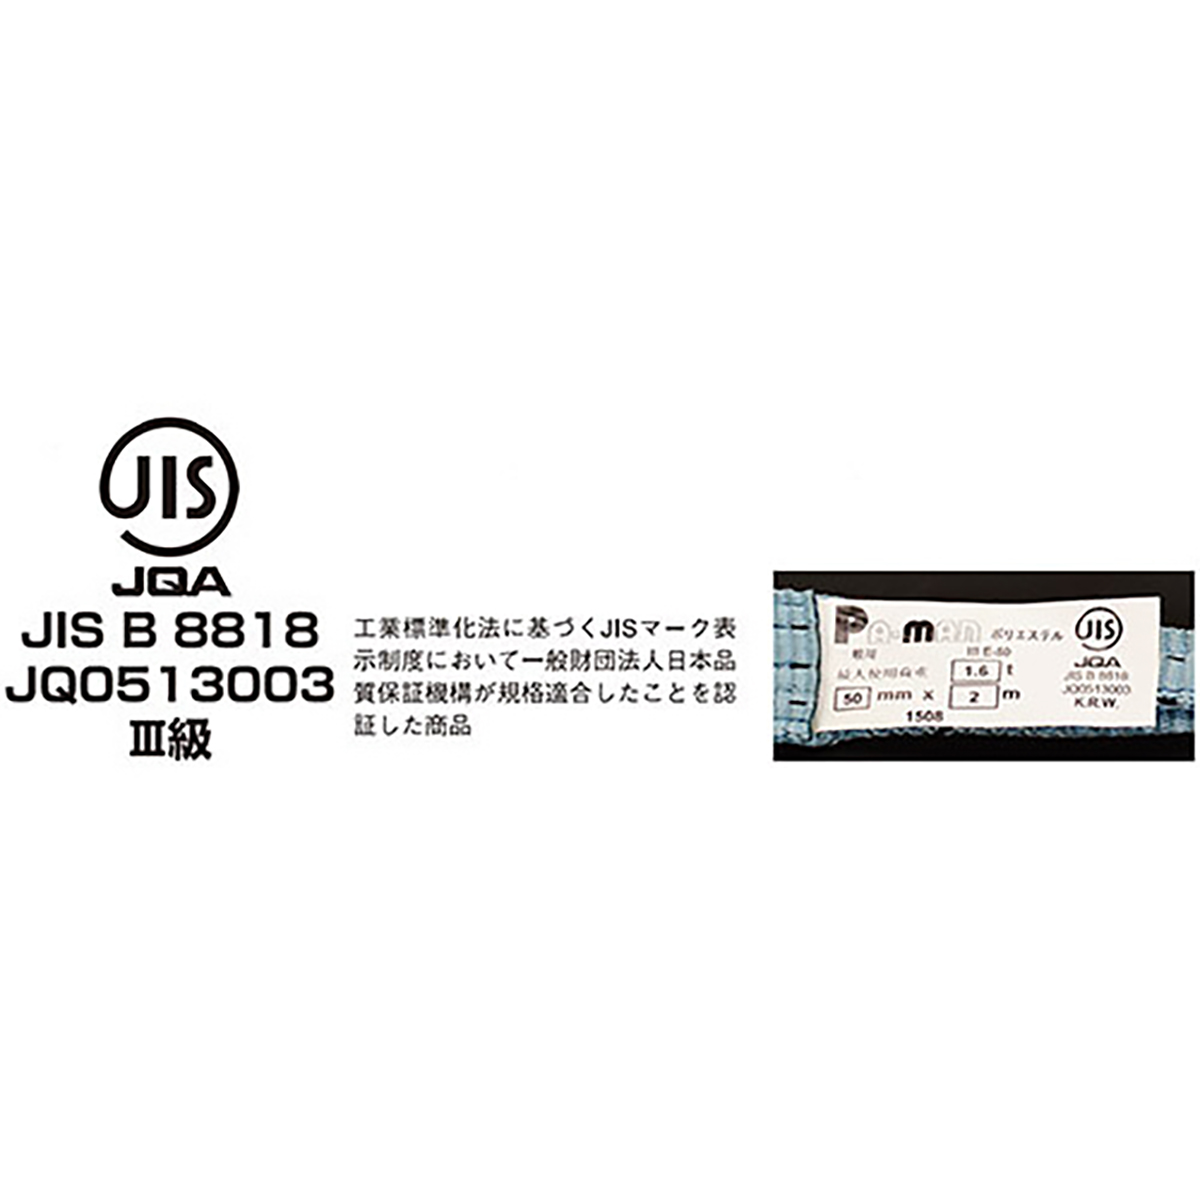 ポリベルトスリング JIS III級 ソフト面付 巾50mm 5m 1本